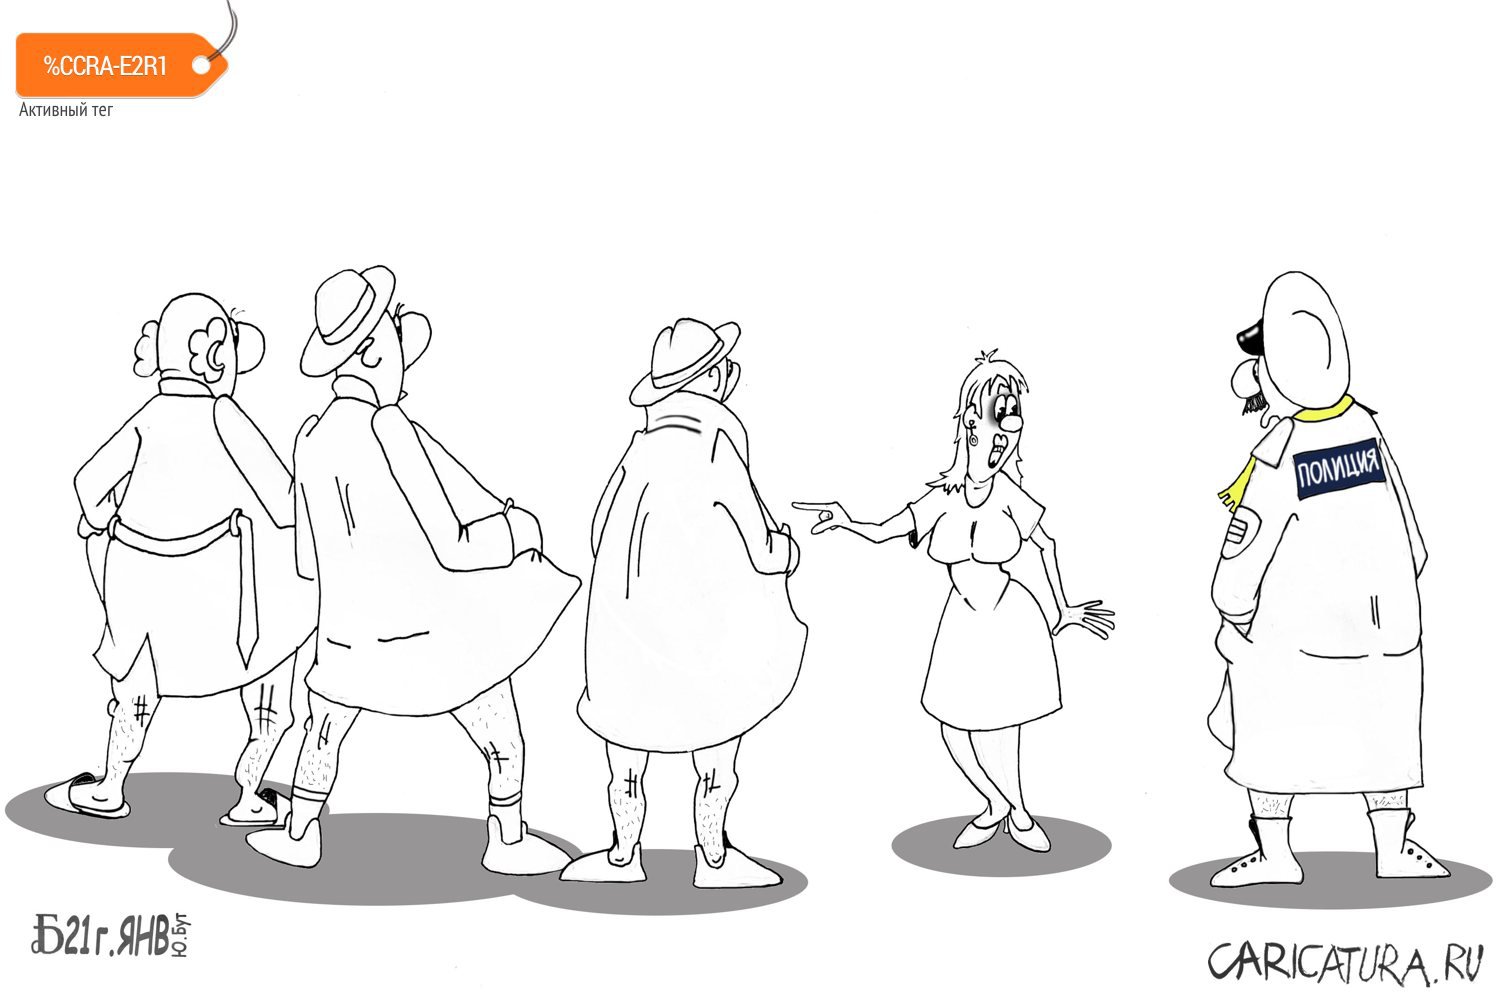 Карикатура "Про опознание", Борис Демин